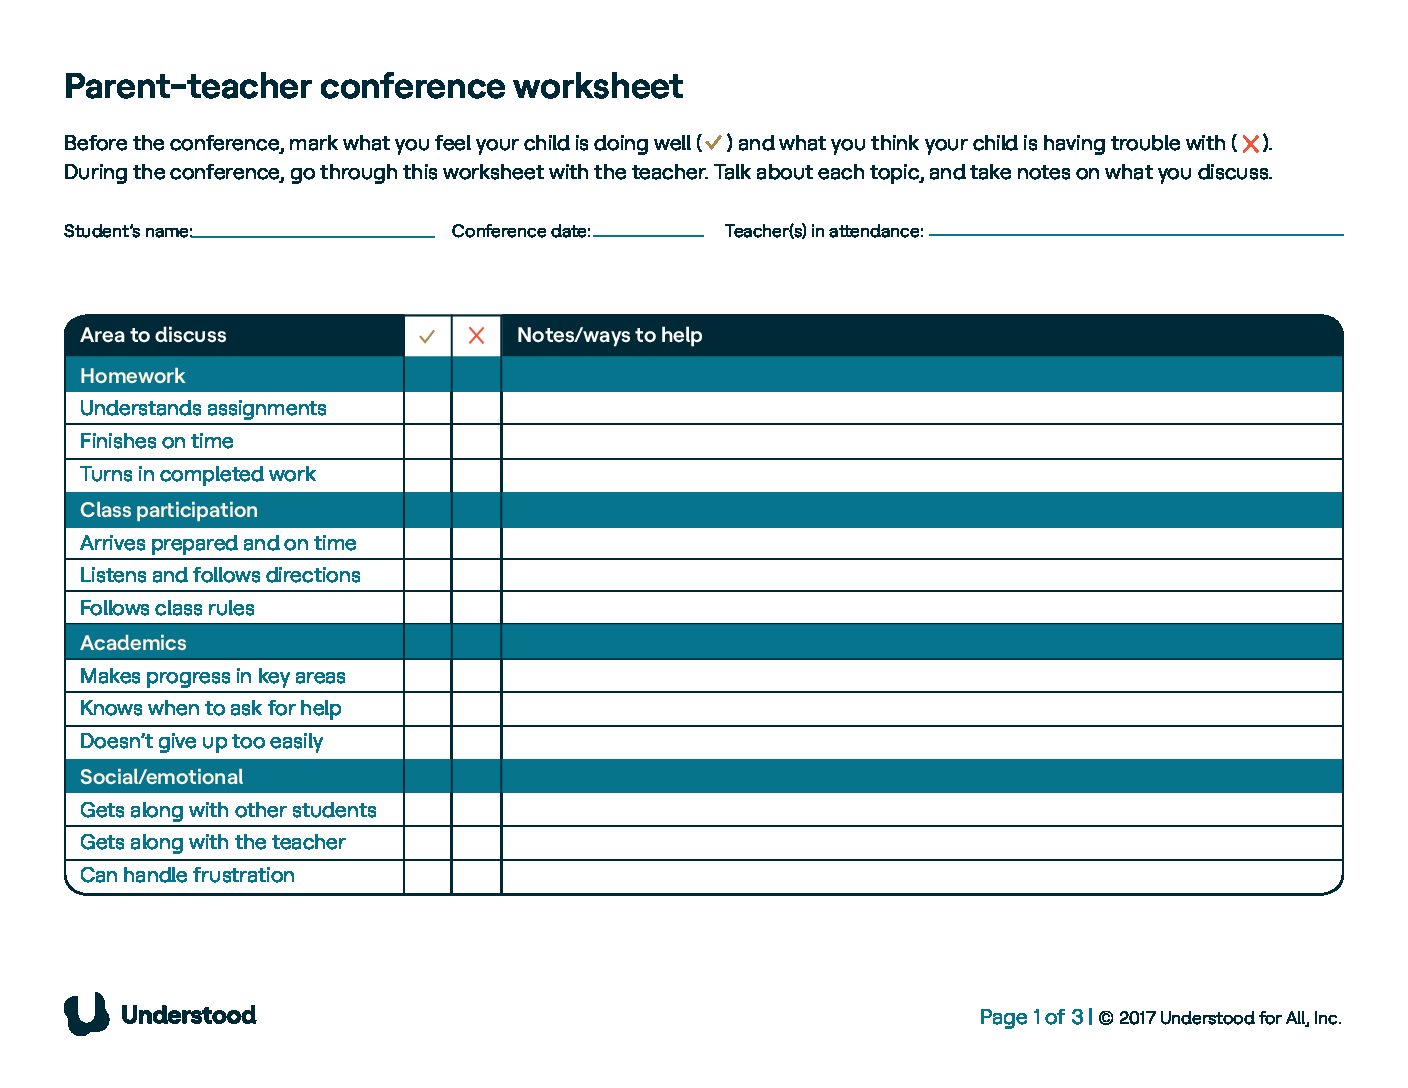 Hoja_de_trabajo_de_la_conferencia_de_padres_profesores_entendida